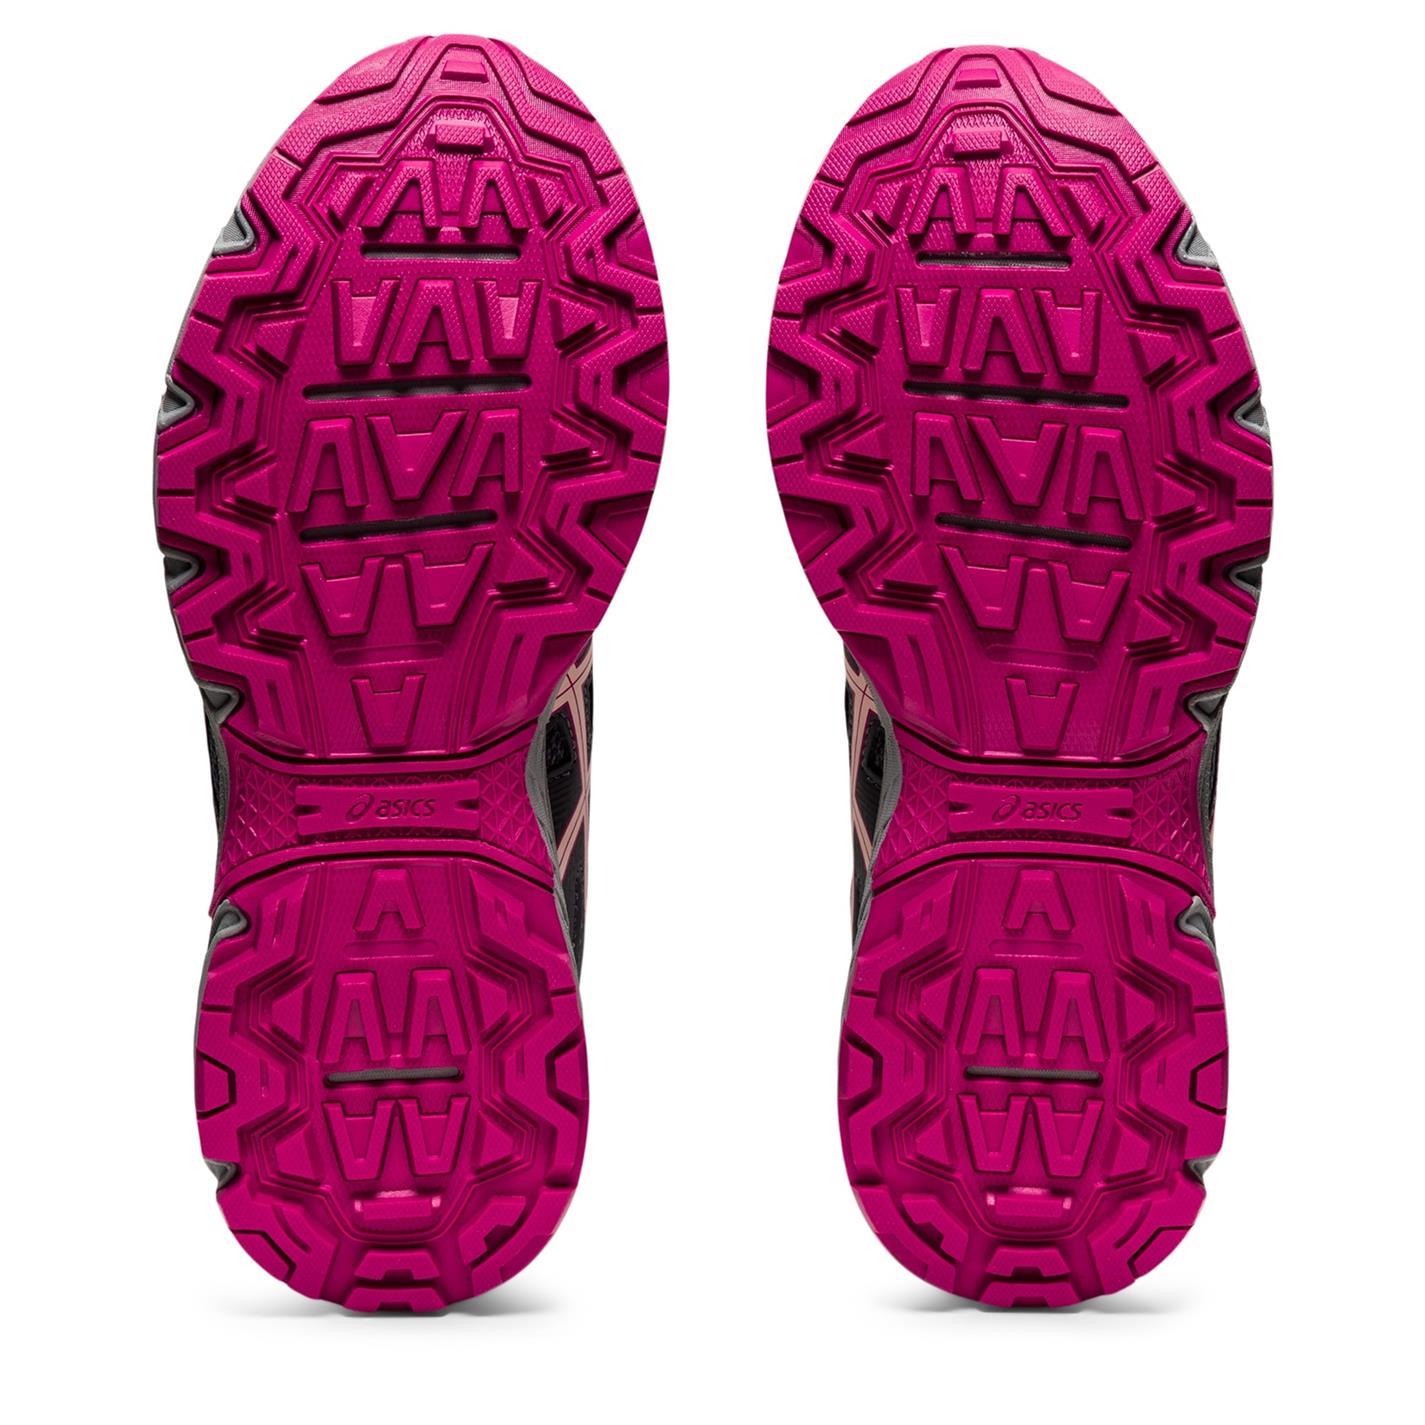 Adidasi alergare Asics GEL-Venture 8 pentru femei gri roz